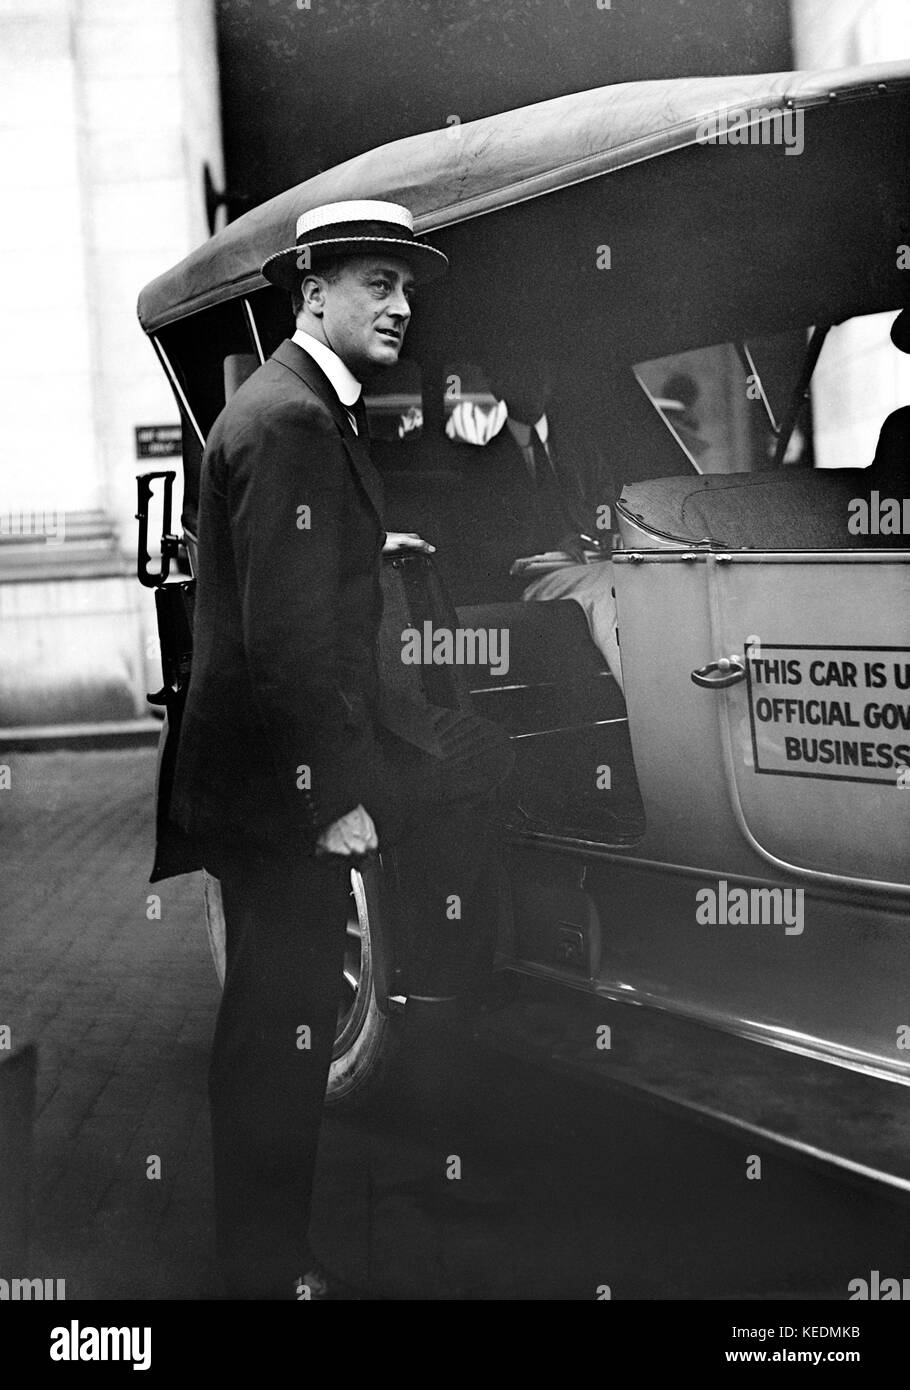 Franklin roosevelt,assistente segretario della Marina,ritratto per arrivare in auto,Washington dc, Stati Uniti d'America,Harris & ewing,1915 Foto Stock